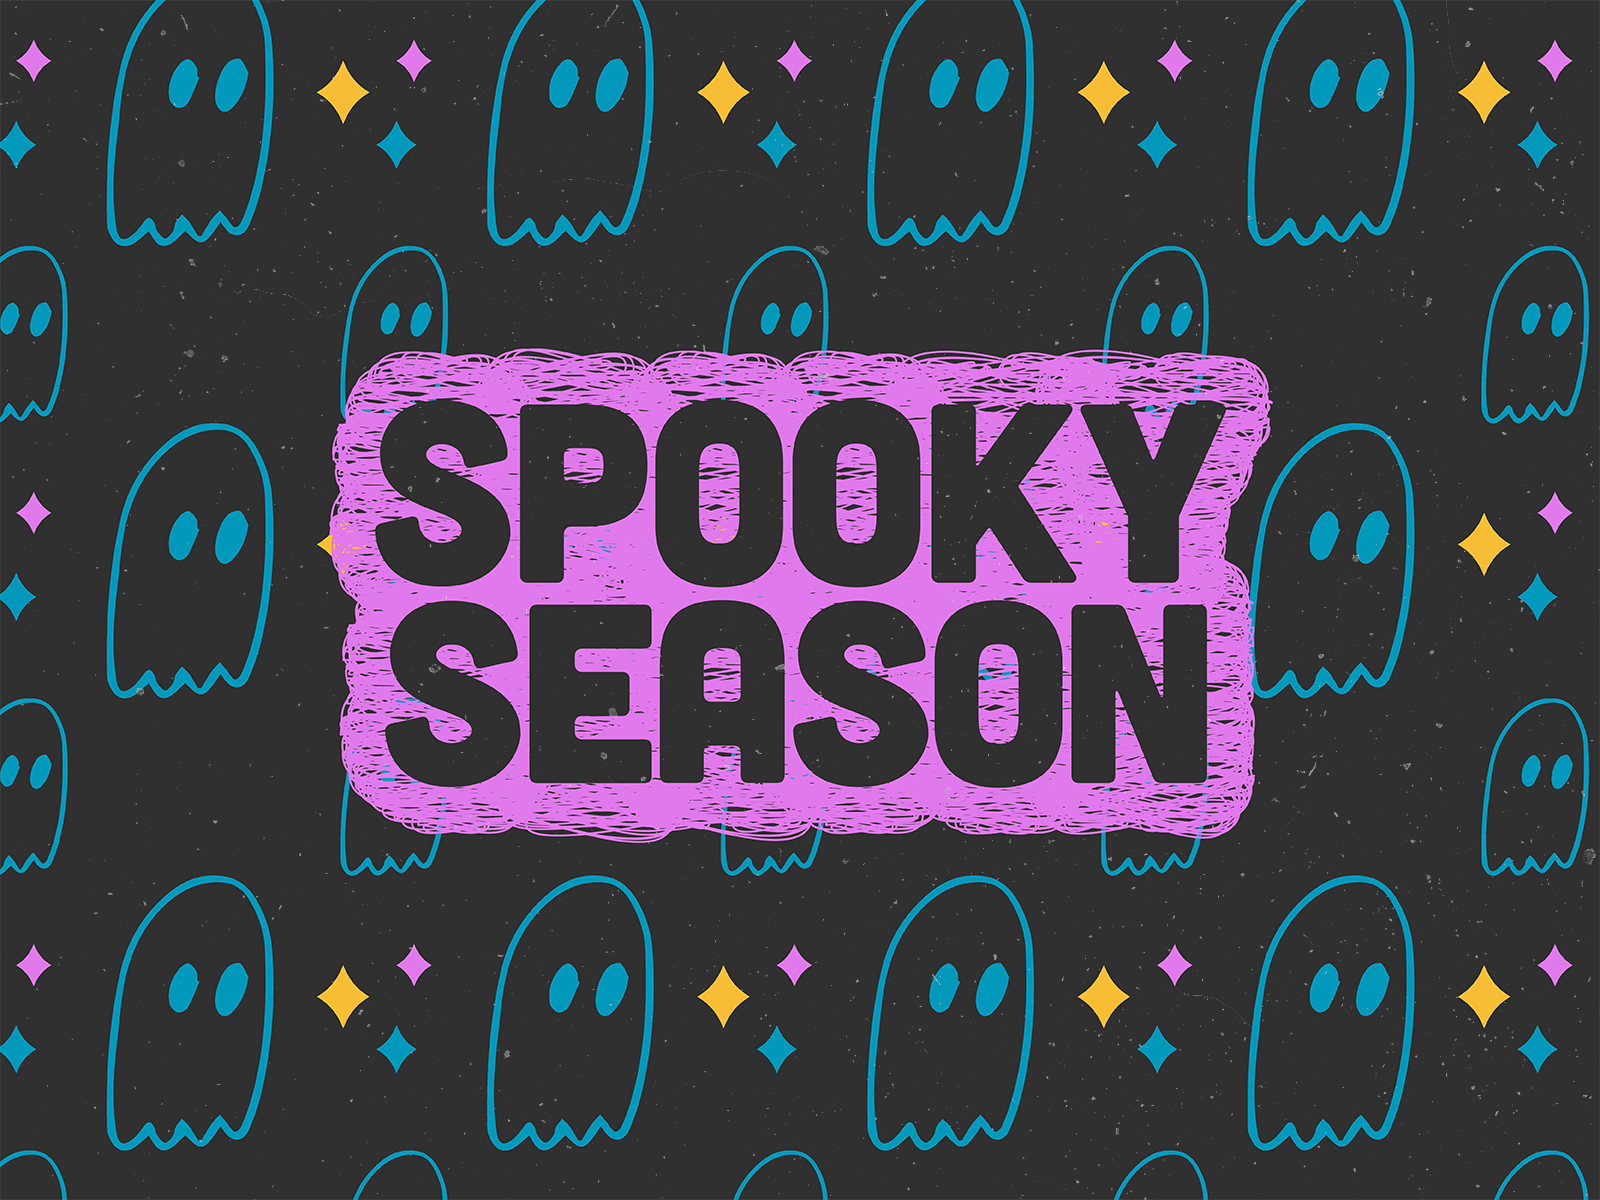 Pattern Design: Spooky Season by Chandler Jean on Dribbble